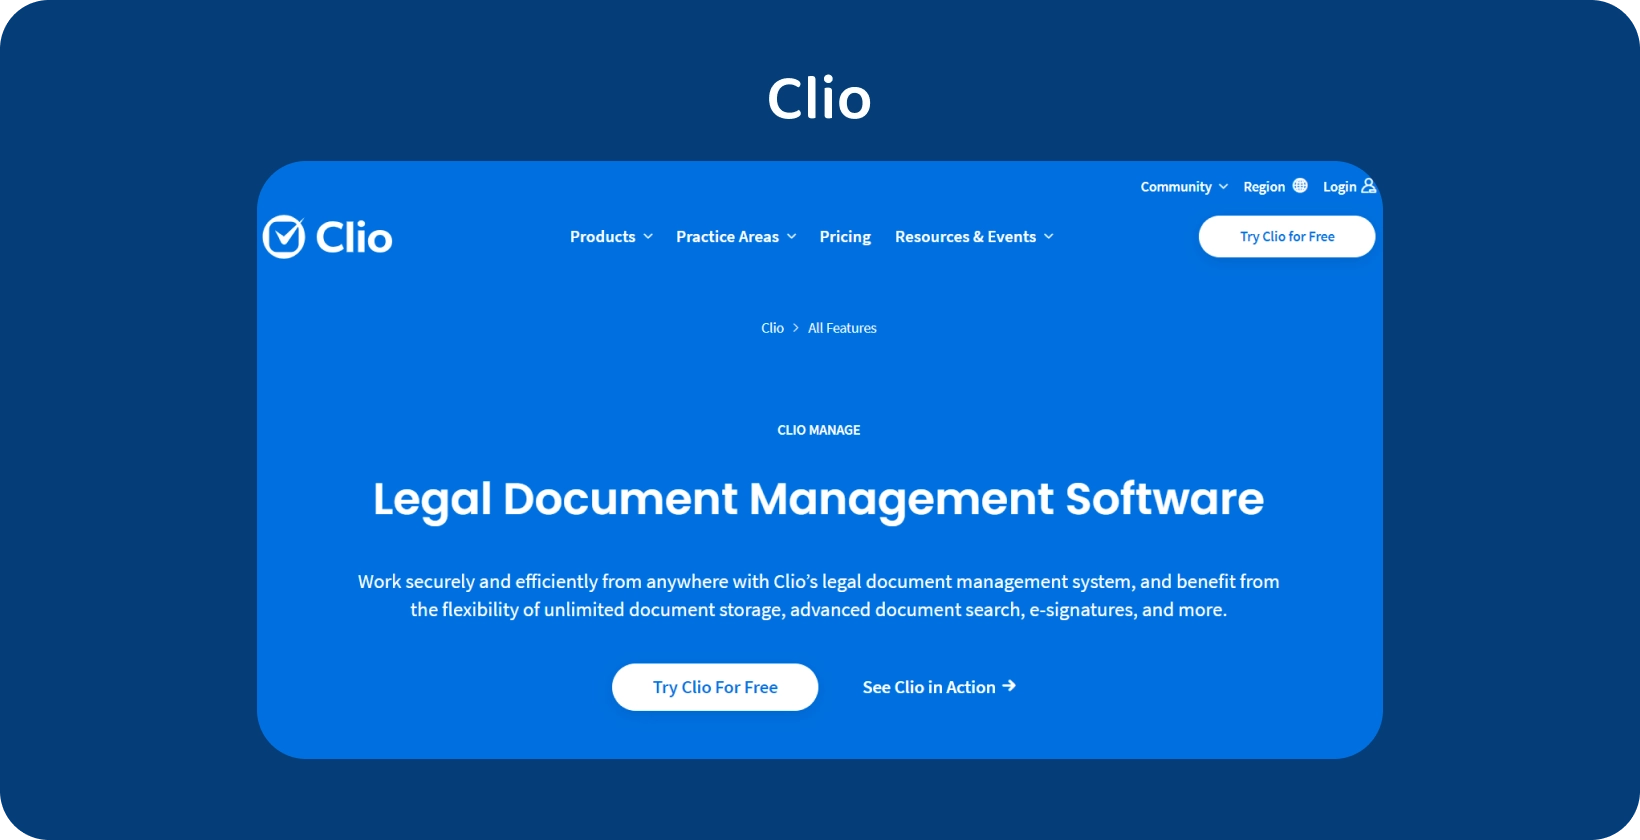 Clioのユーザーインターフェースは、法的文書管理ソフトウェアを紹介し、整理された記録処理を最適化します。